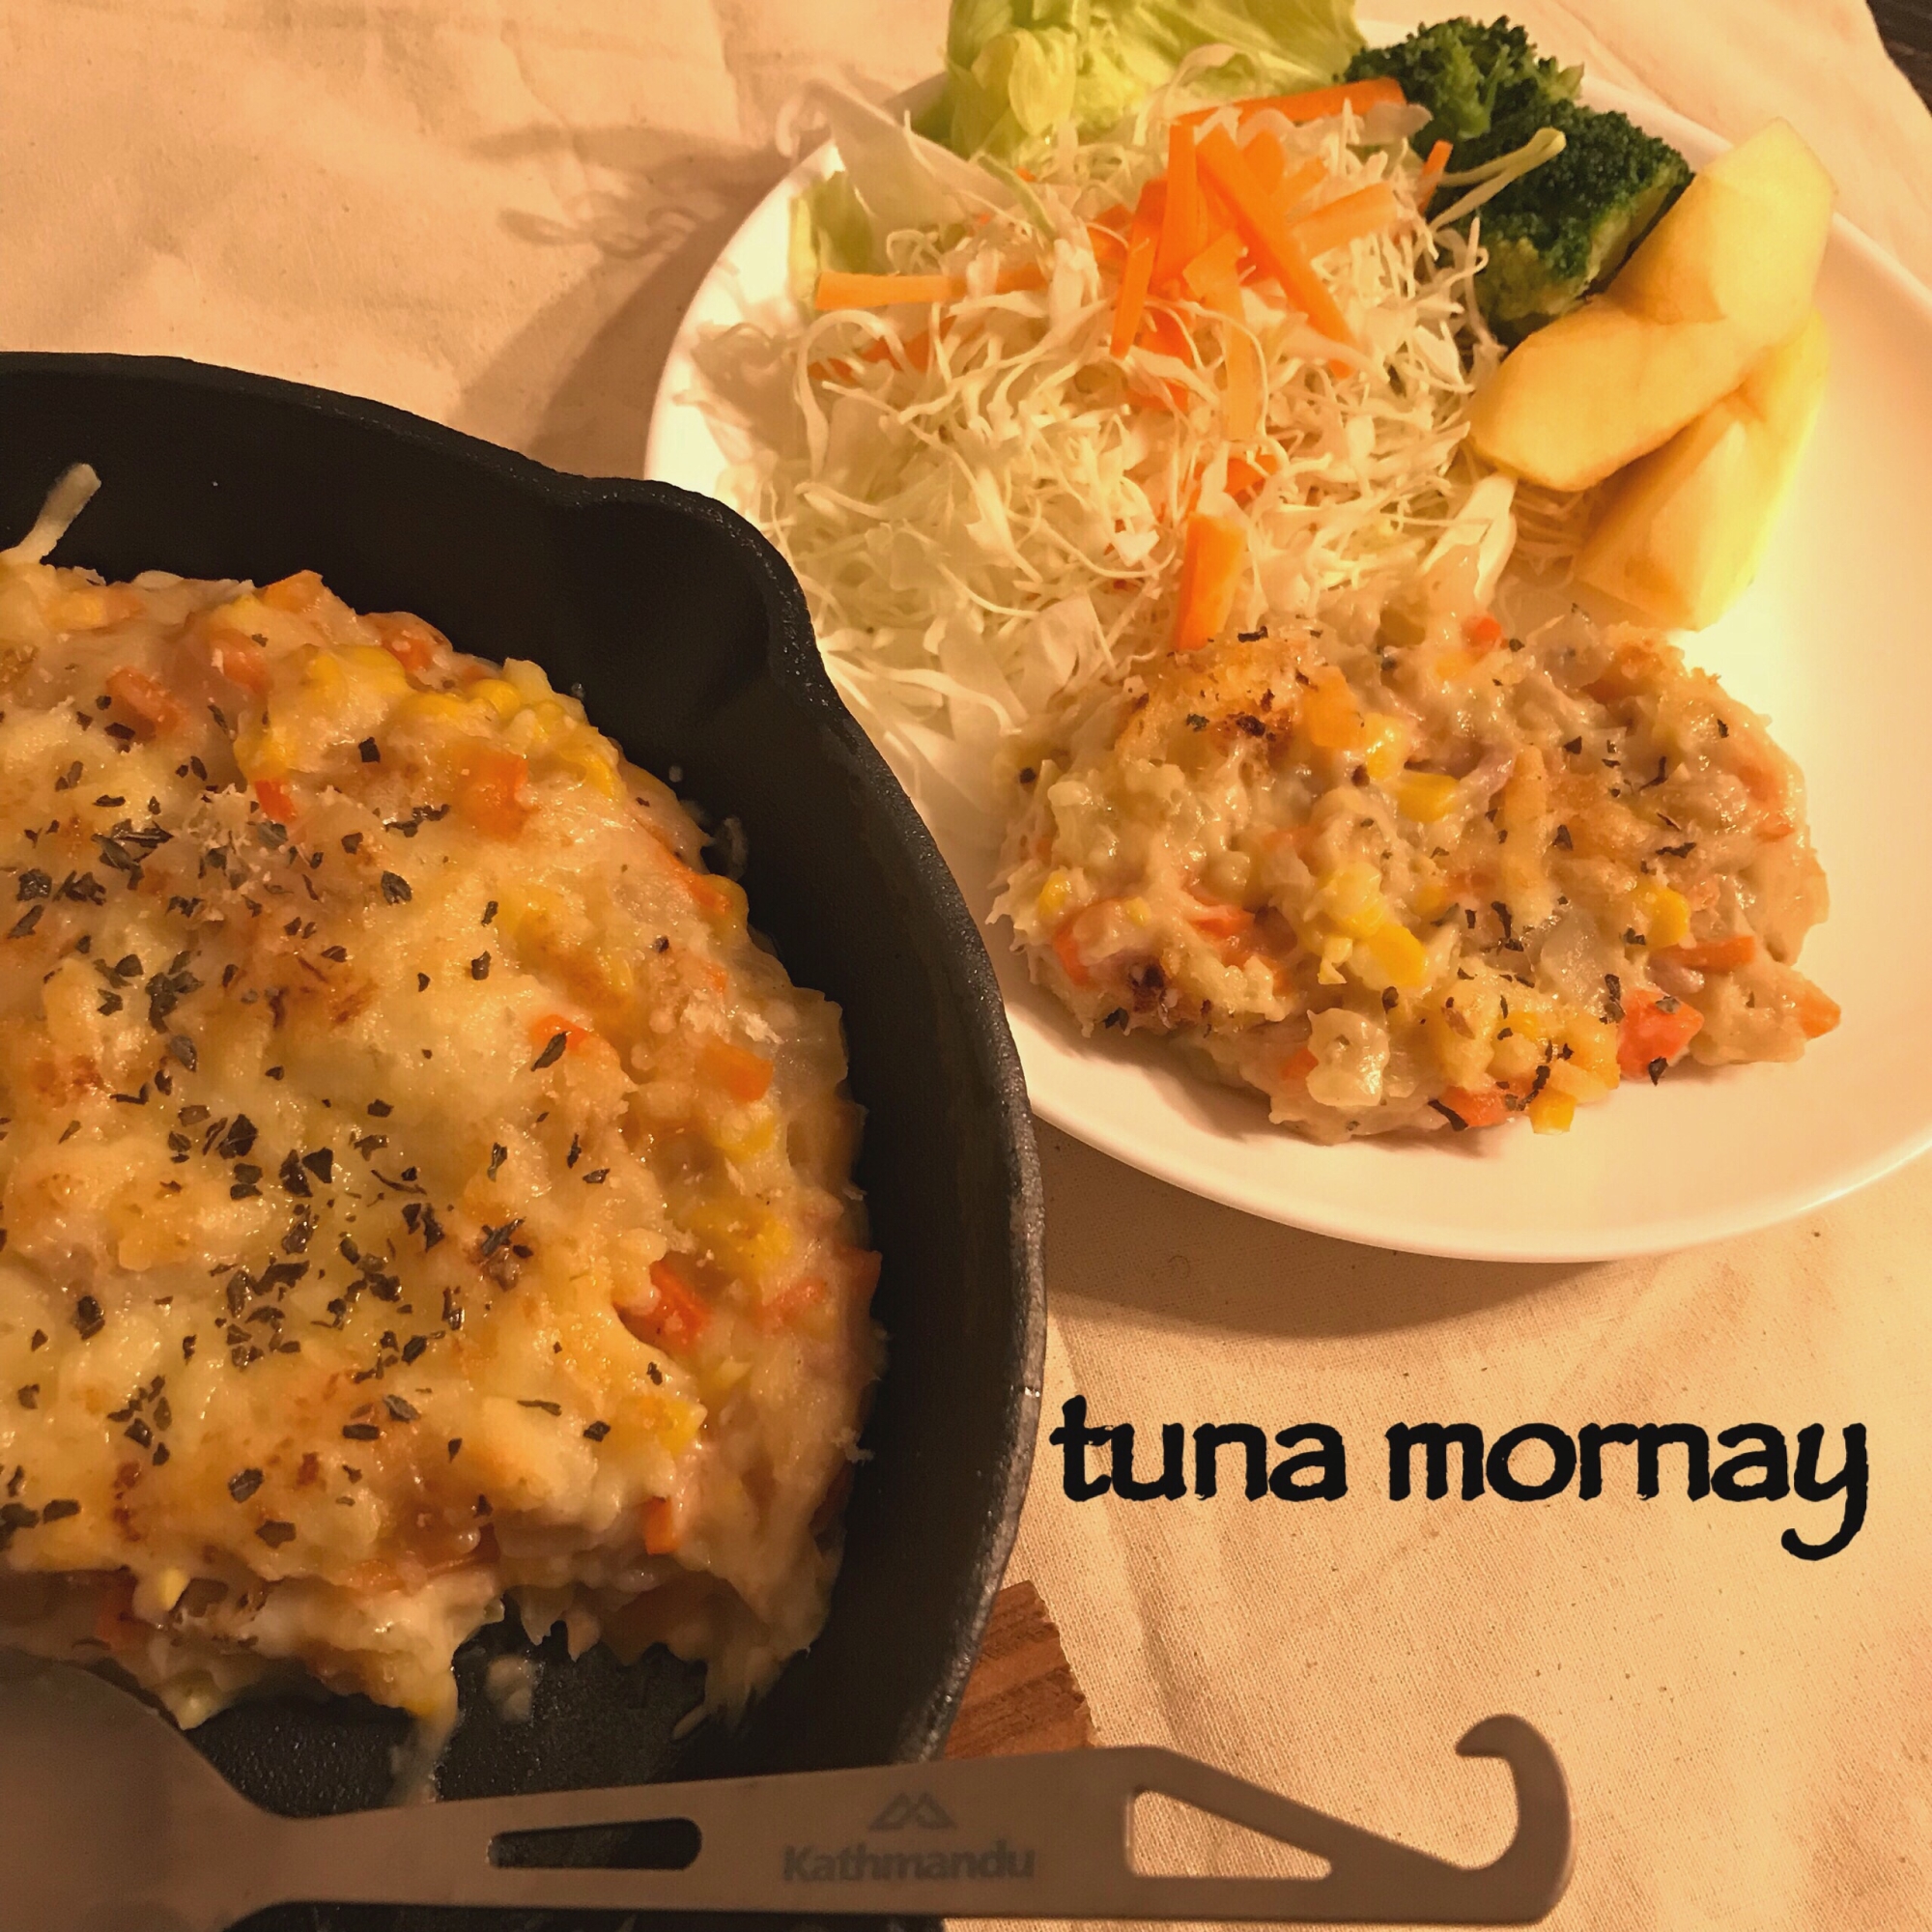 ツナモネ tuna mornay